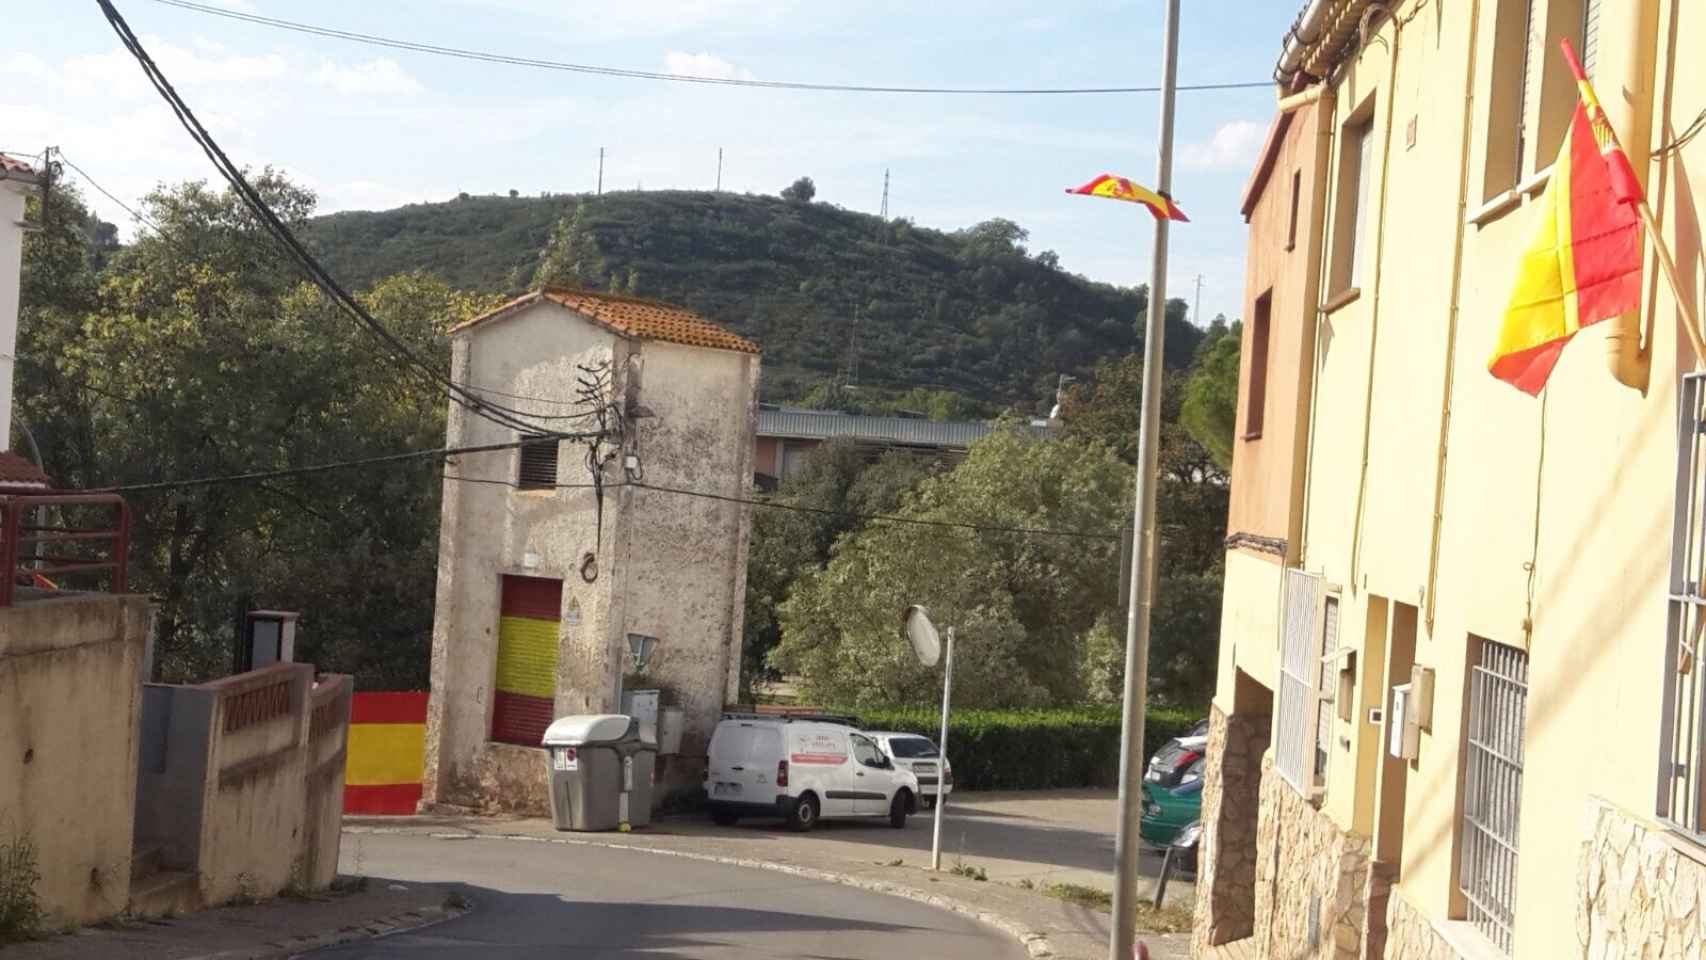 Los vecinos del barrio han llenado de banderas españolas las calles de Villaroja.